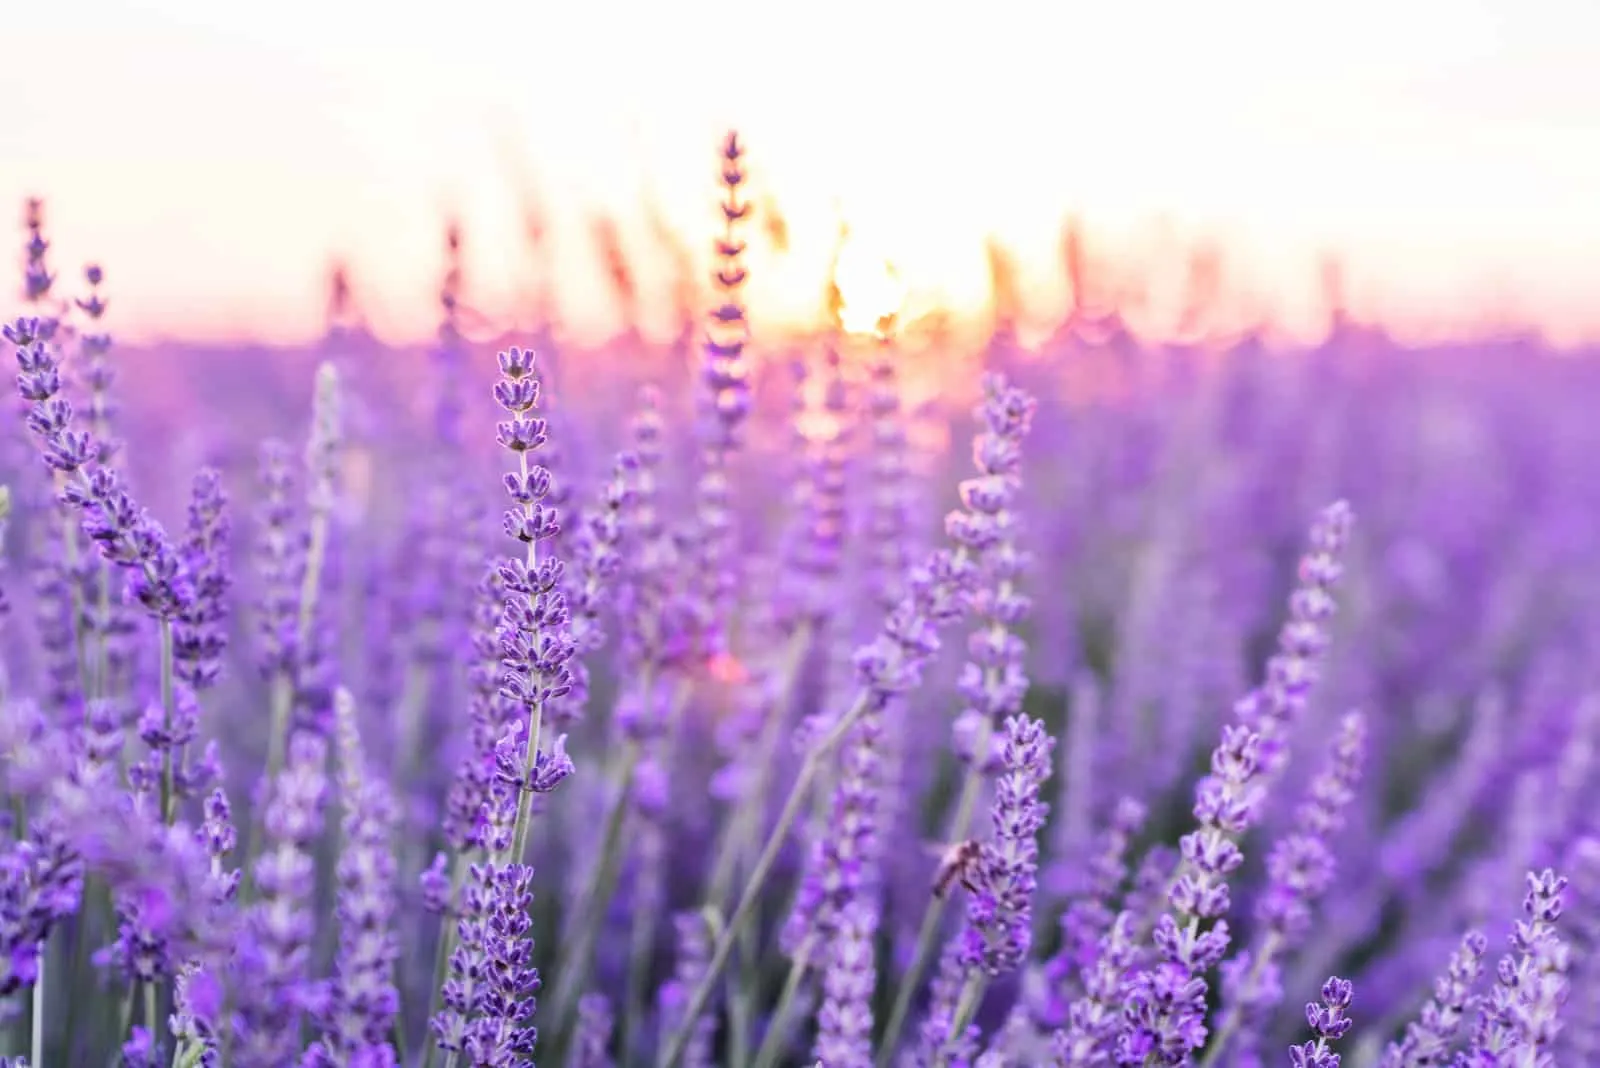 Lavender flowers in field